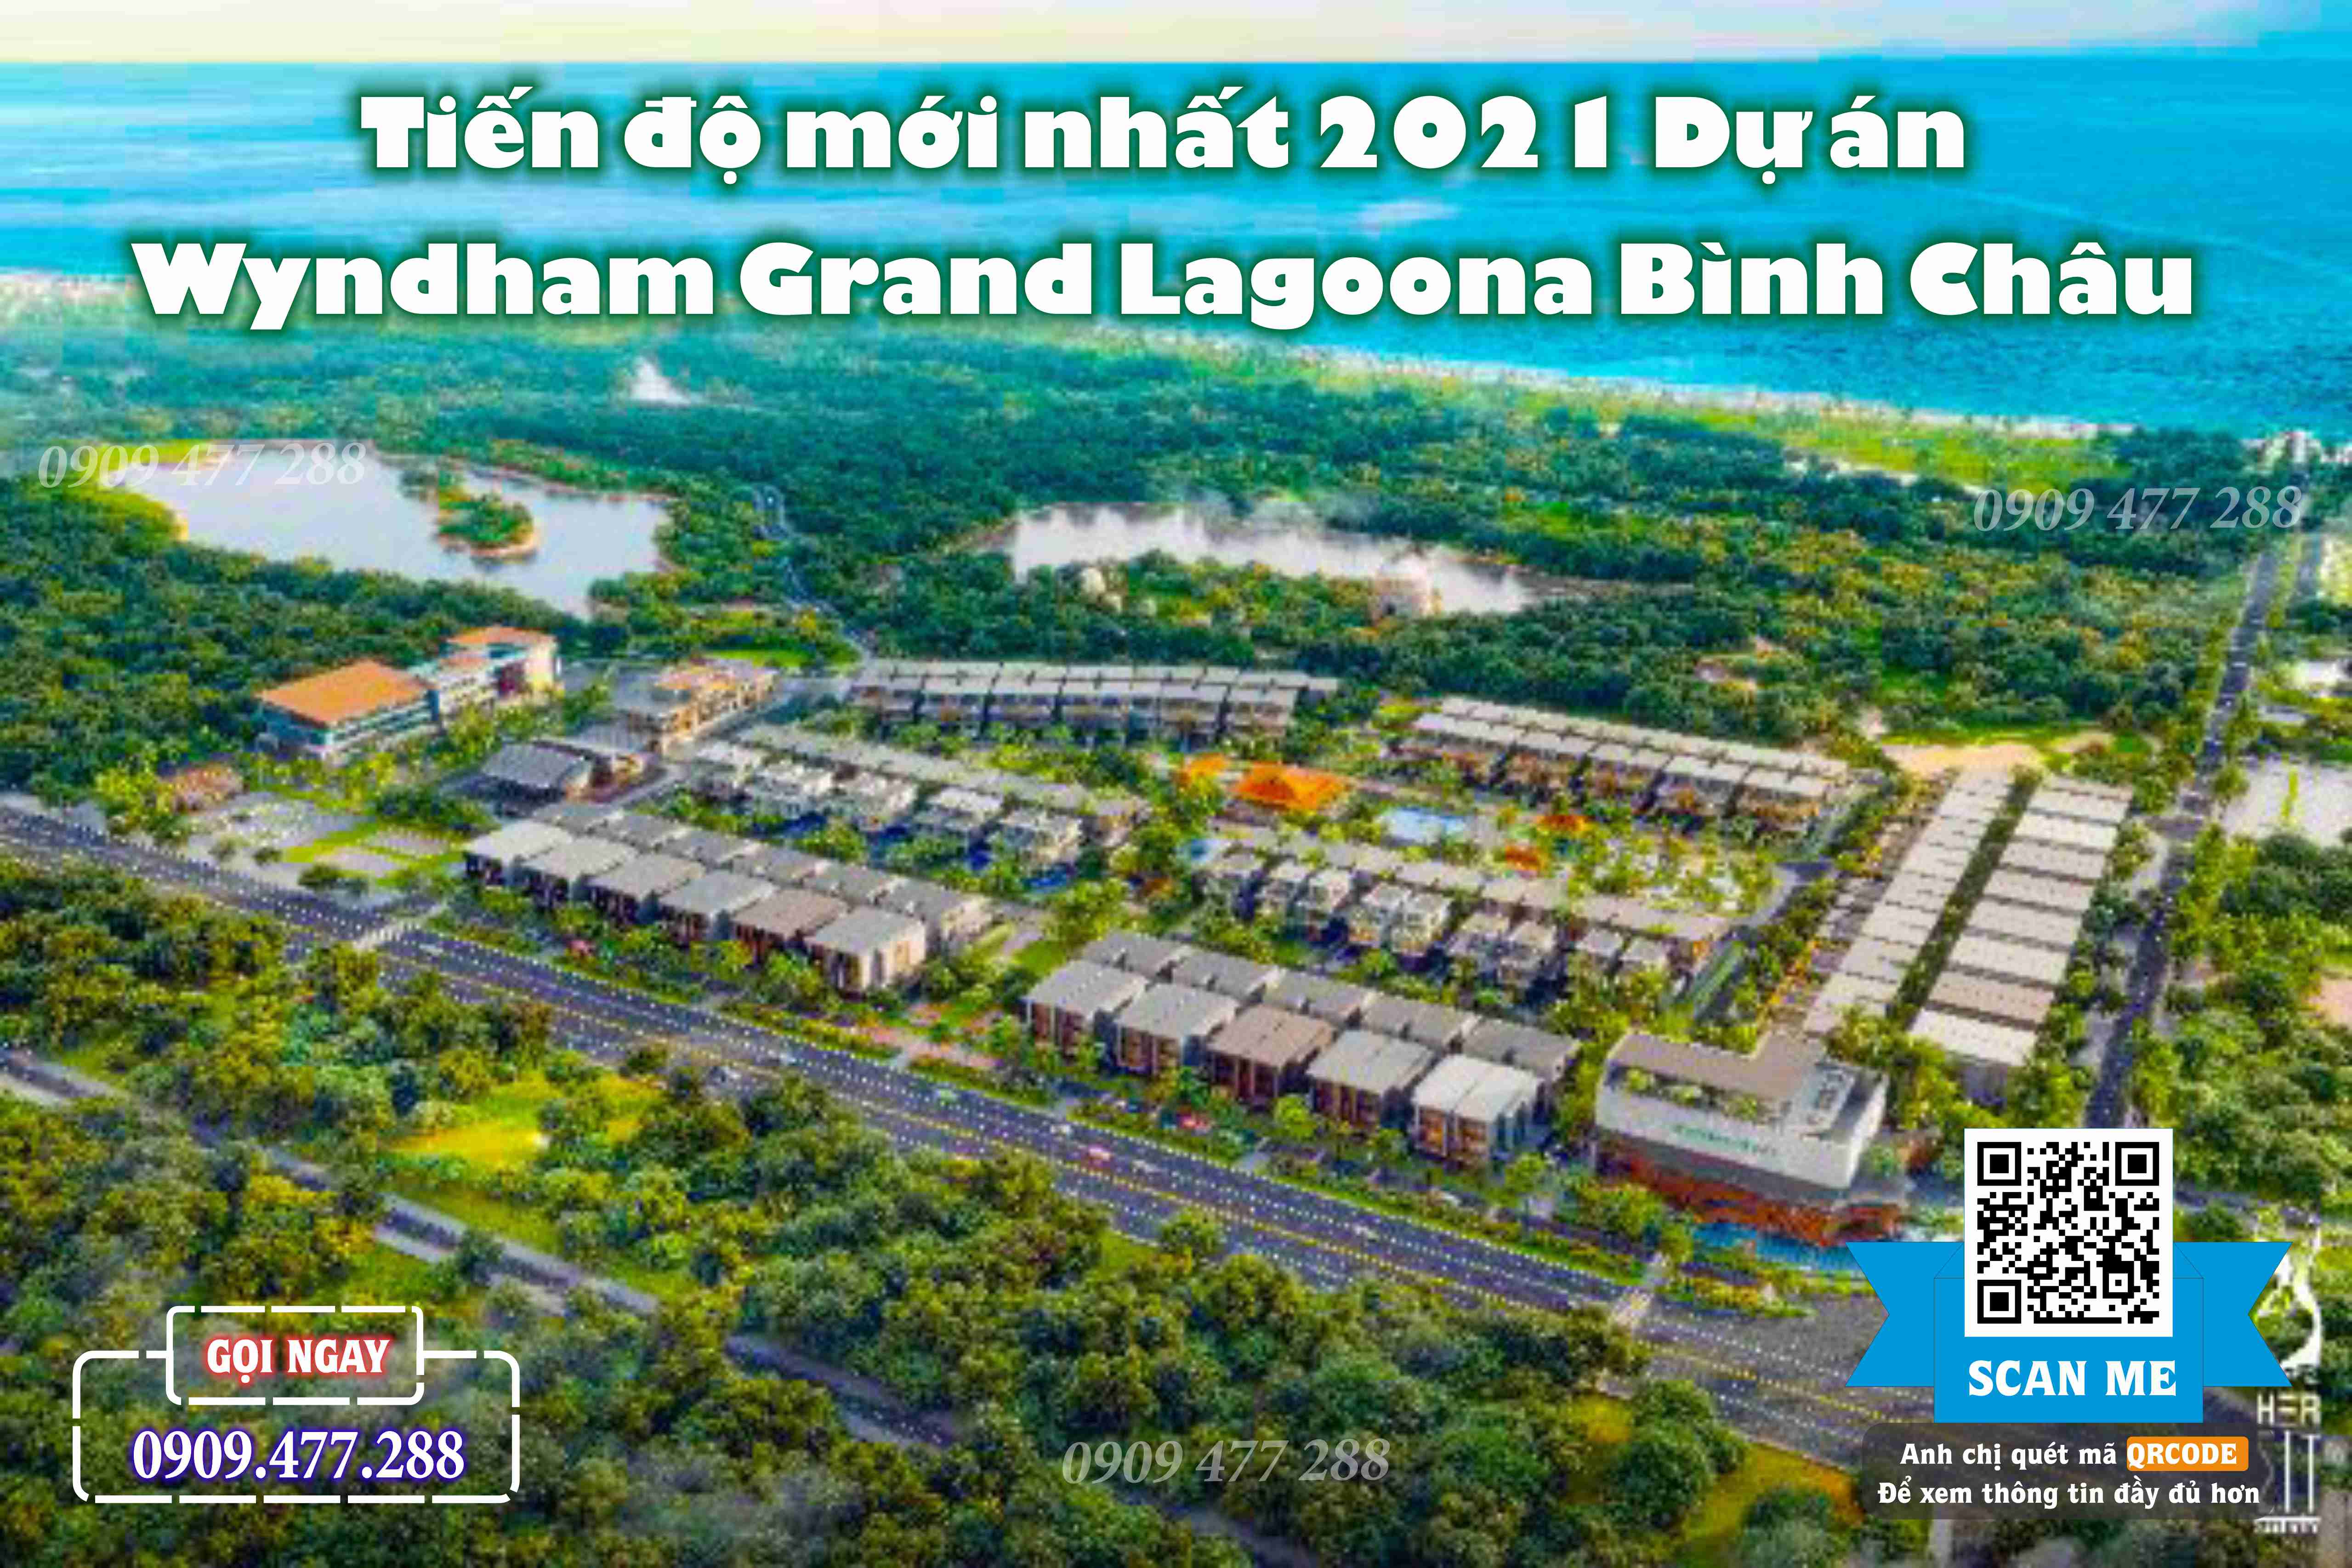 Wyndham Grand Lagoona Bình Châu (5)